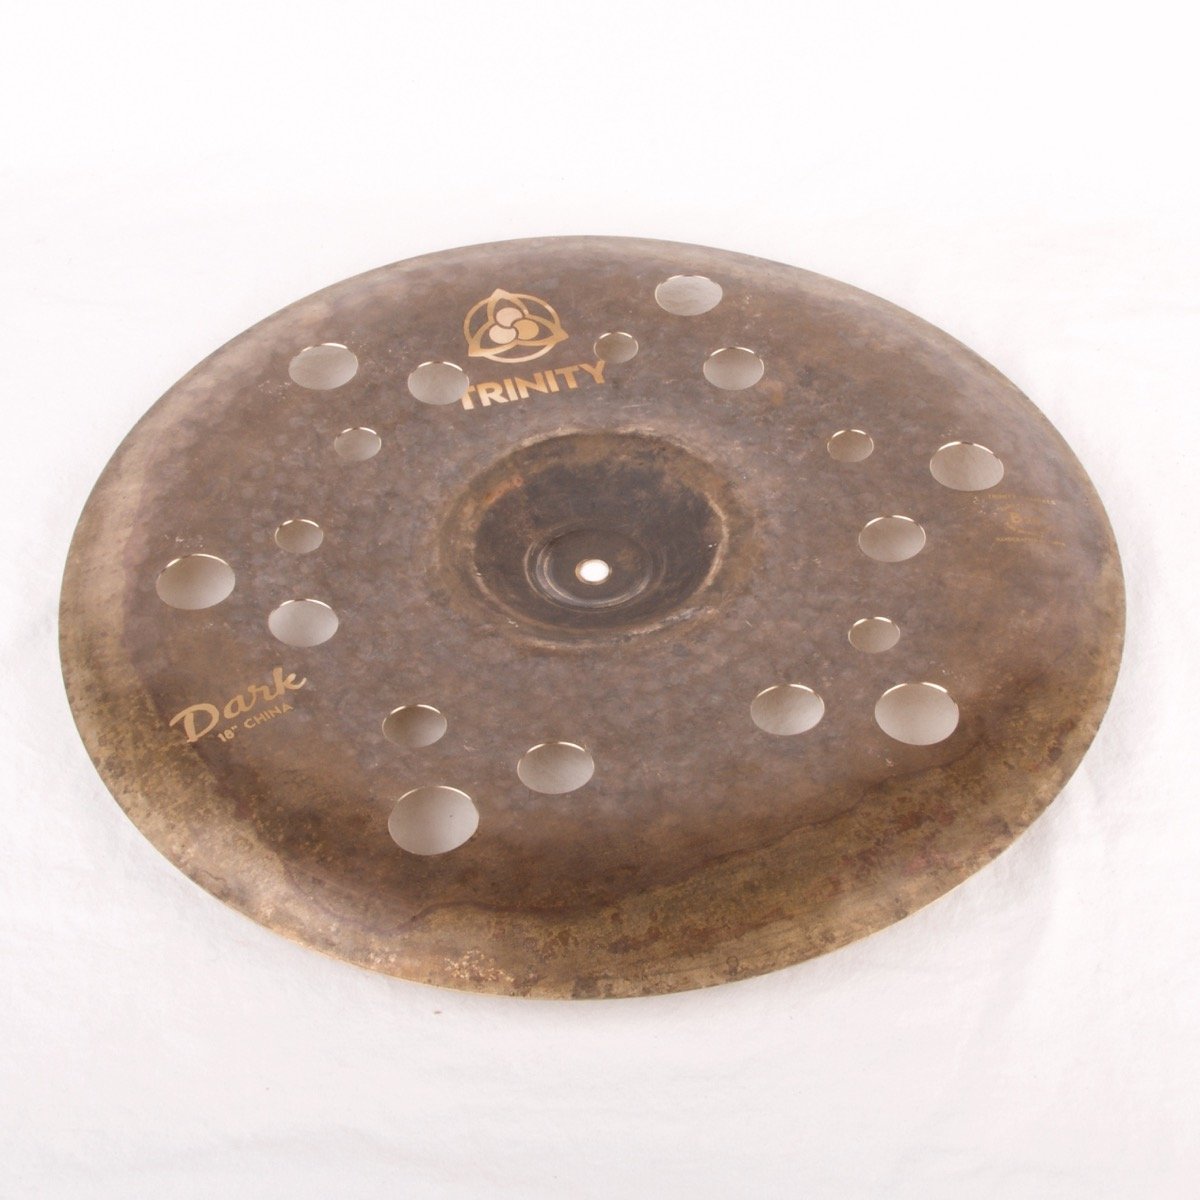 18" Trinity Dark Holey China Cymbal